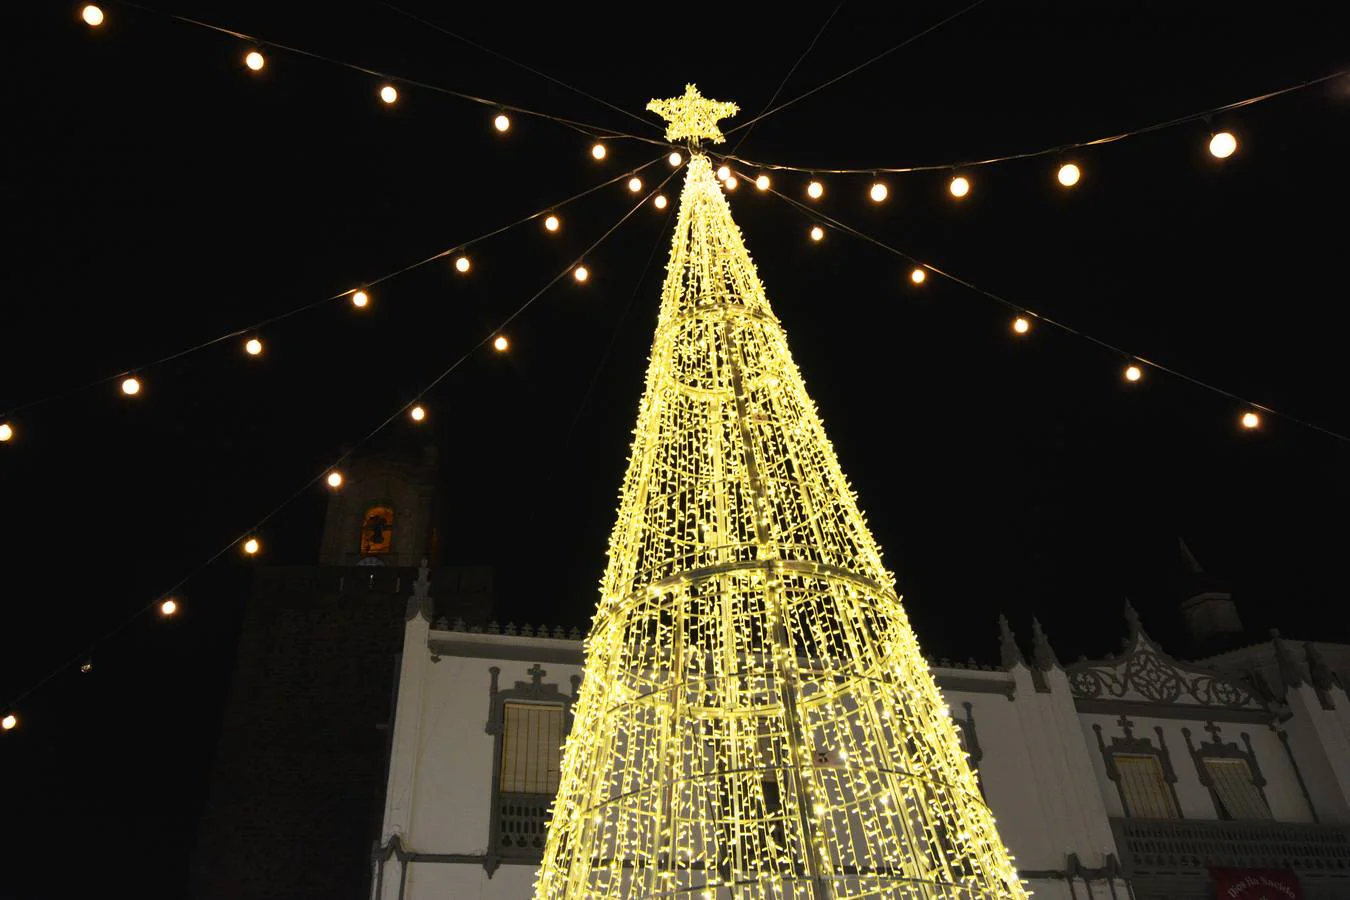 Fotos: Luces y música por Navidad en Fregenal